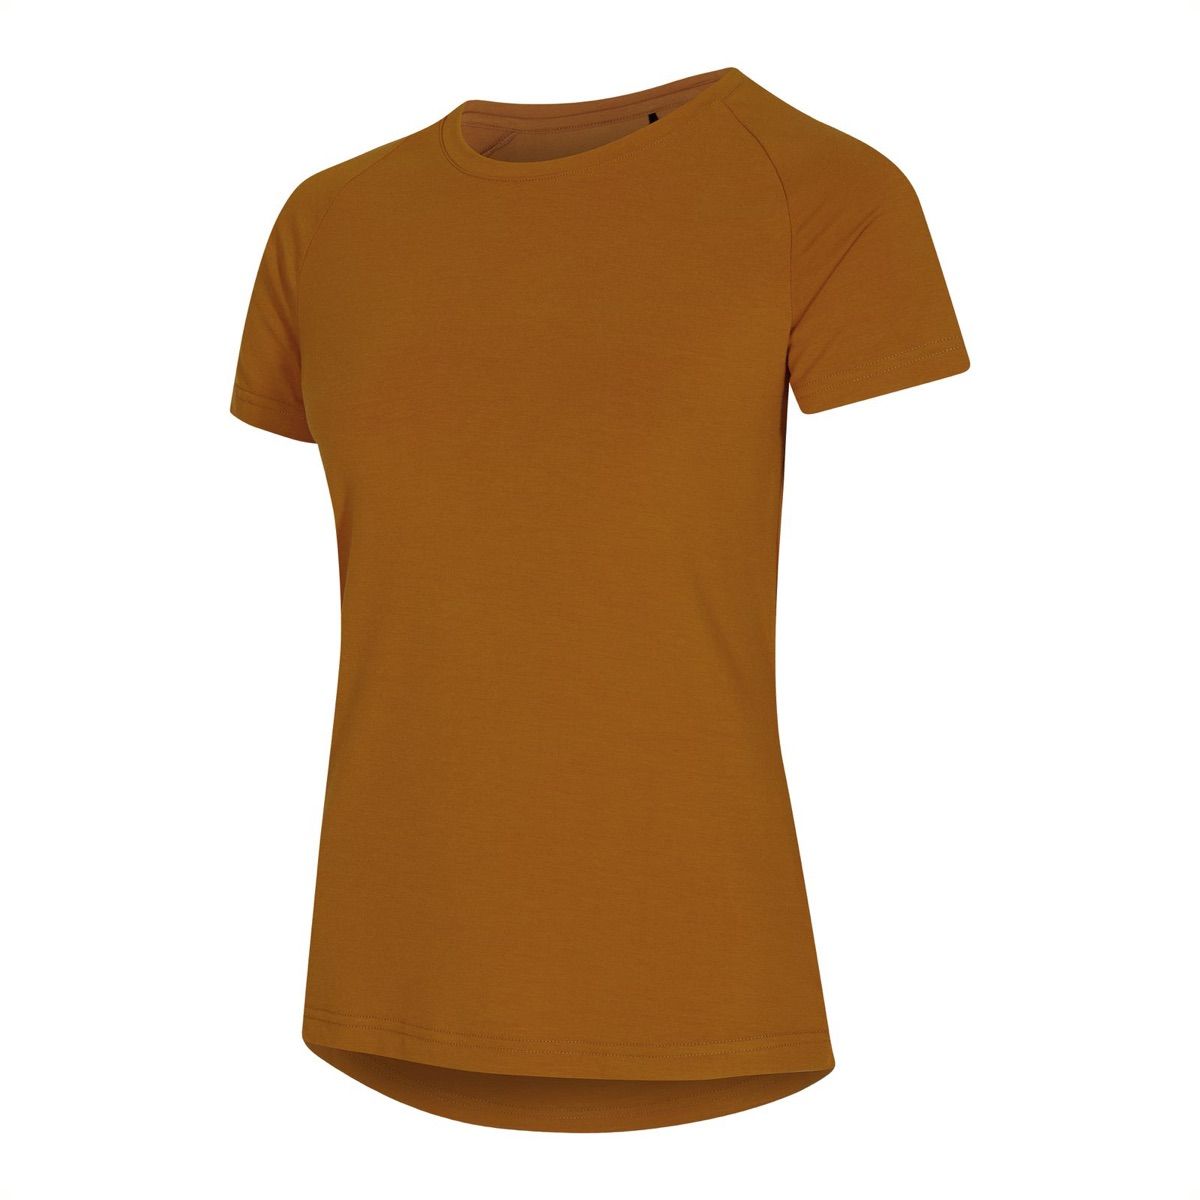 Urberg Vidsel Bamboo T-shirt Women's Pumpkin Spice